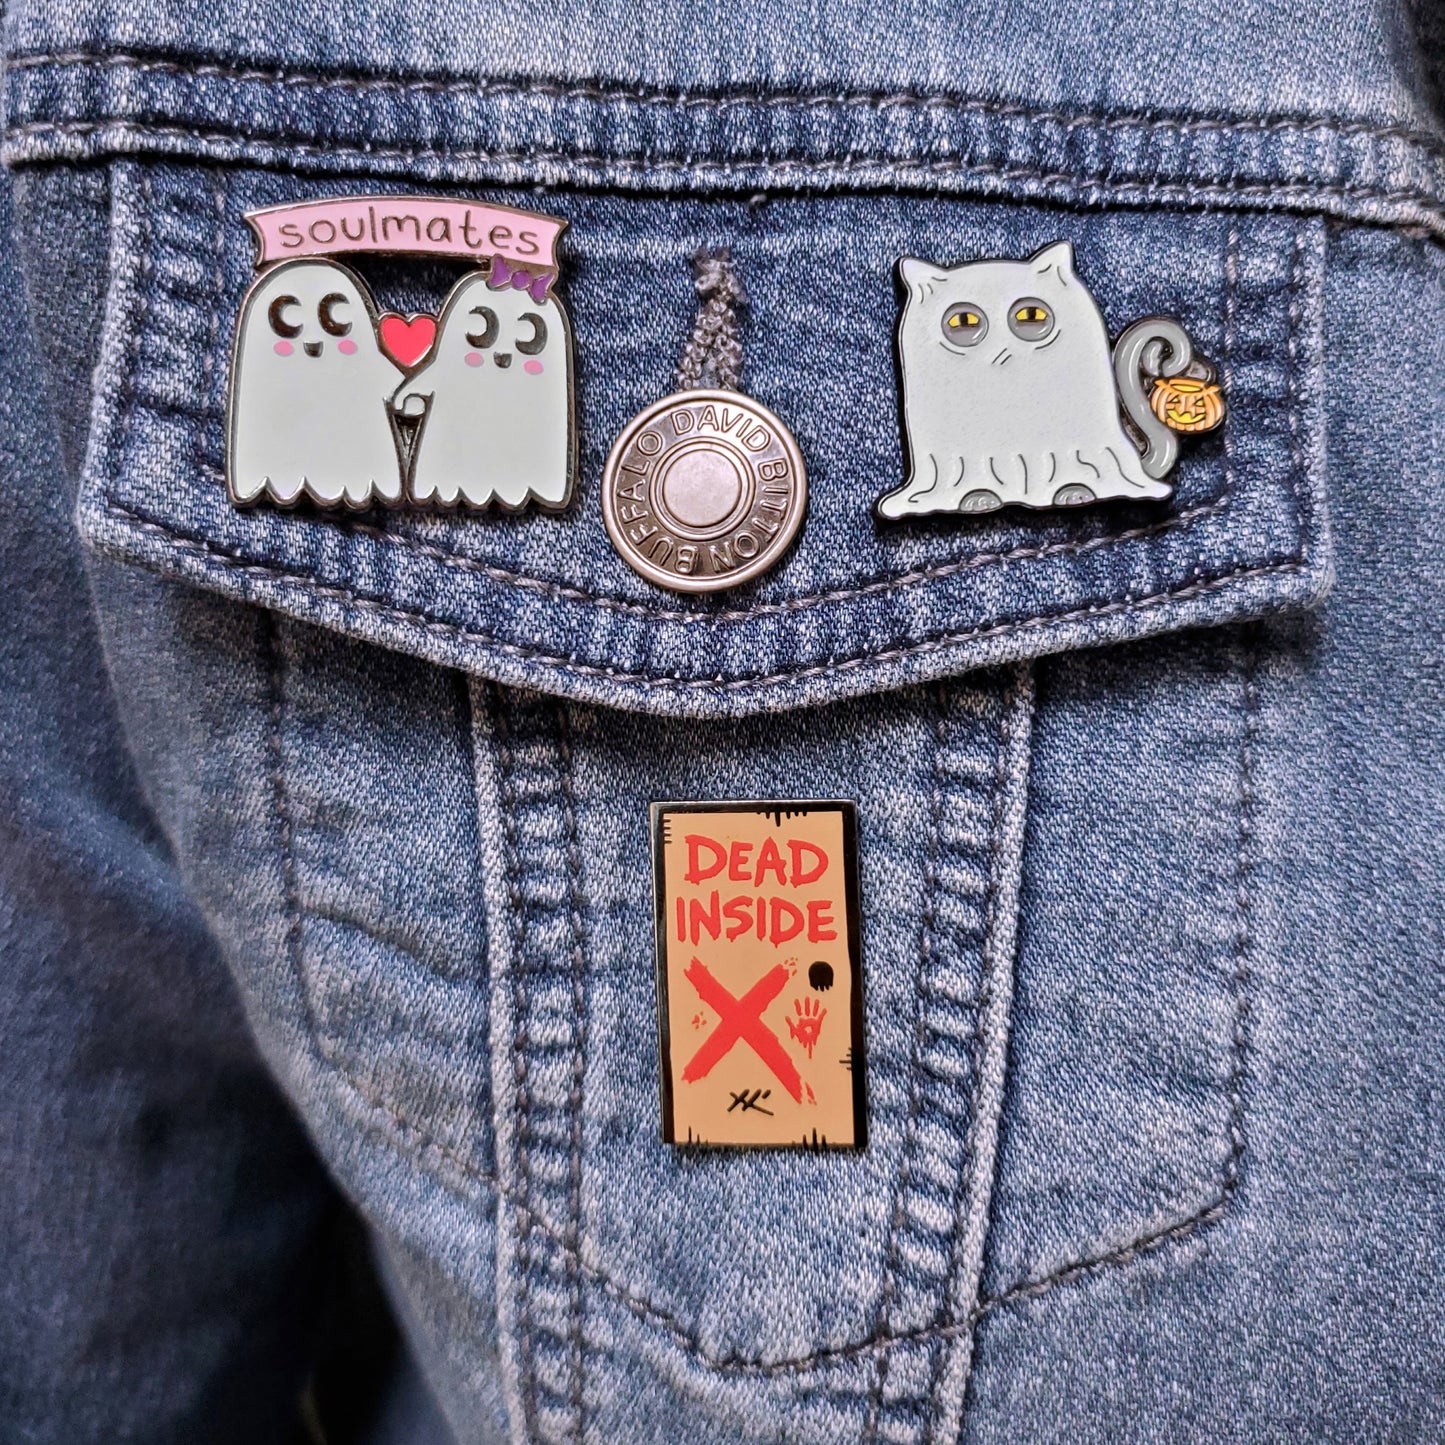 Spooky Kitty Pin - Kolorspun Enamel Pins